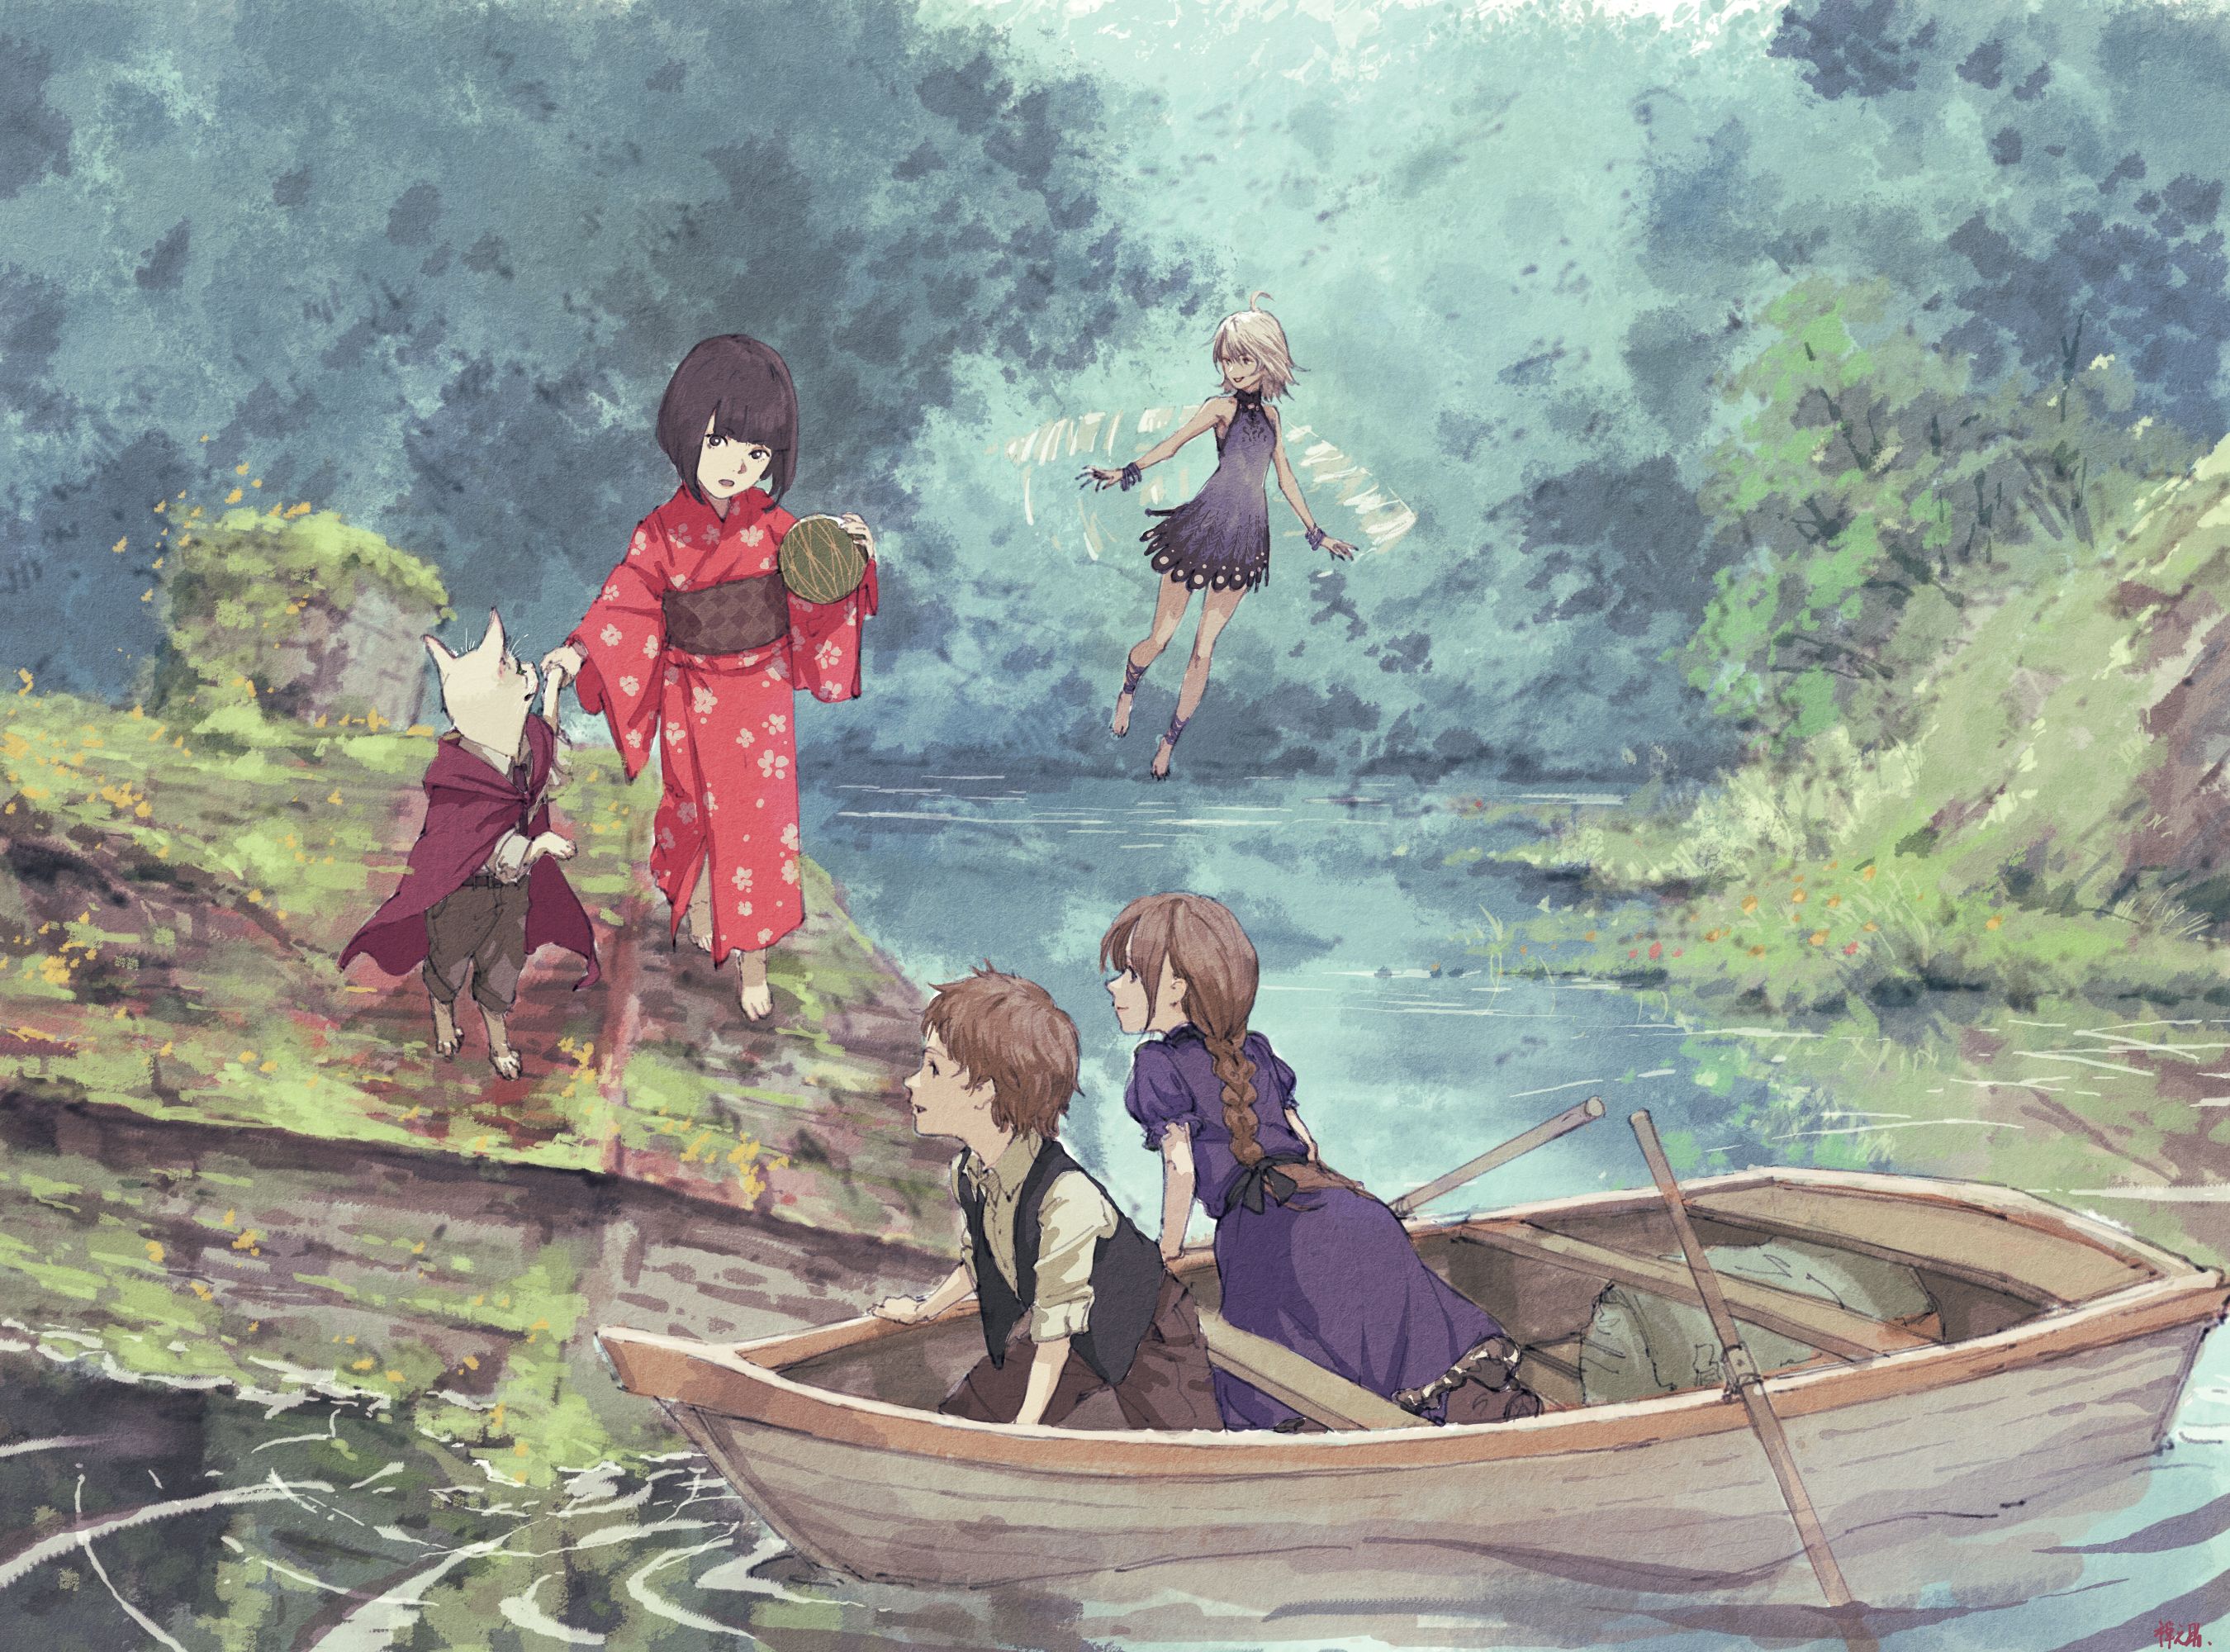 Boat Boy Fairy Fantasy Girl Kimono Nature River 2700x2000